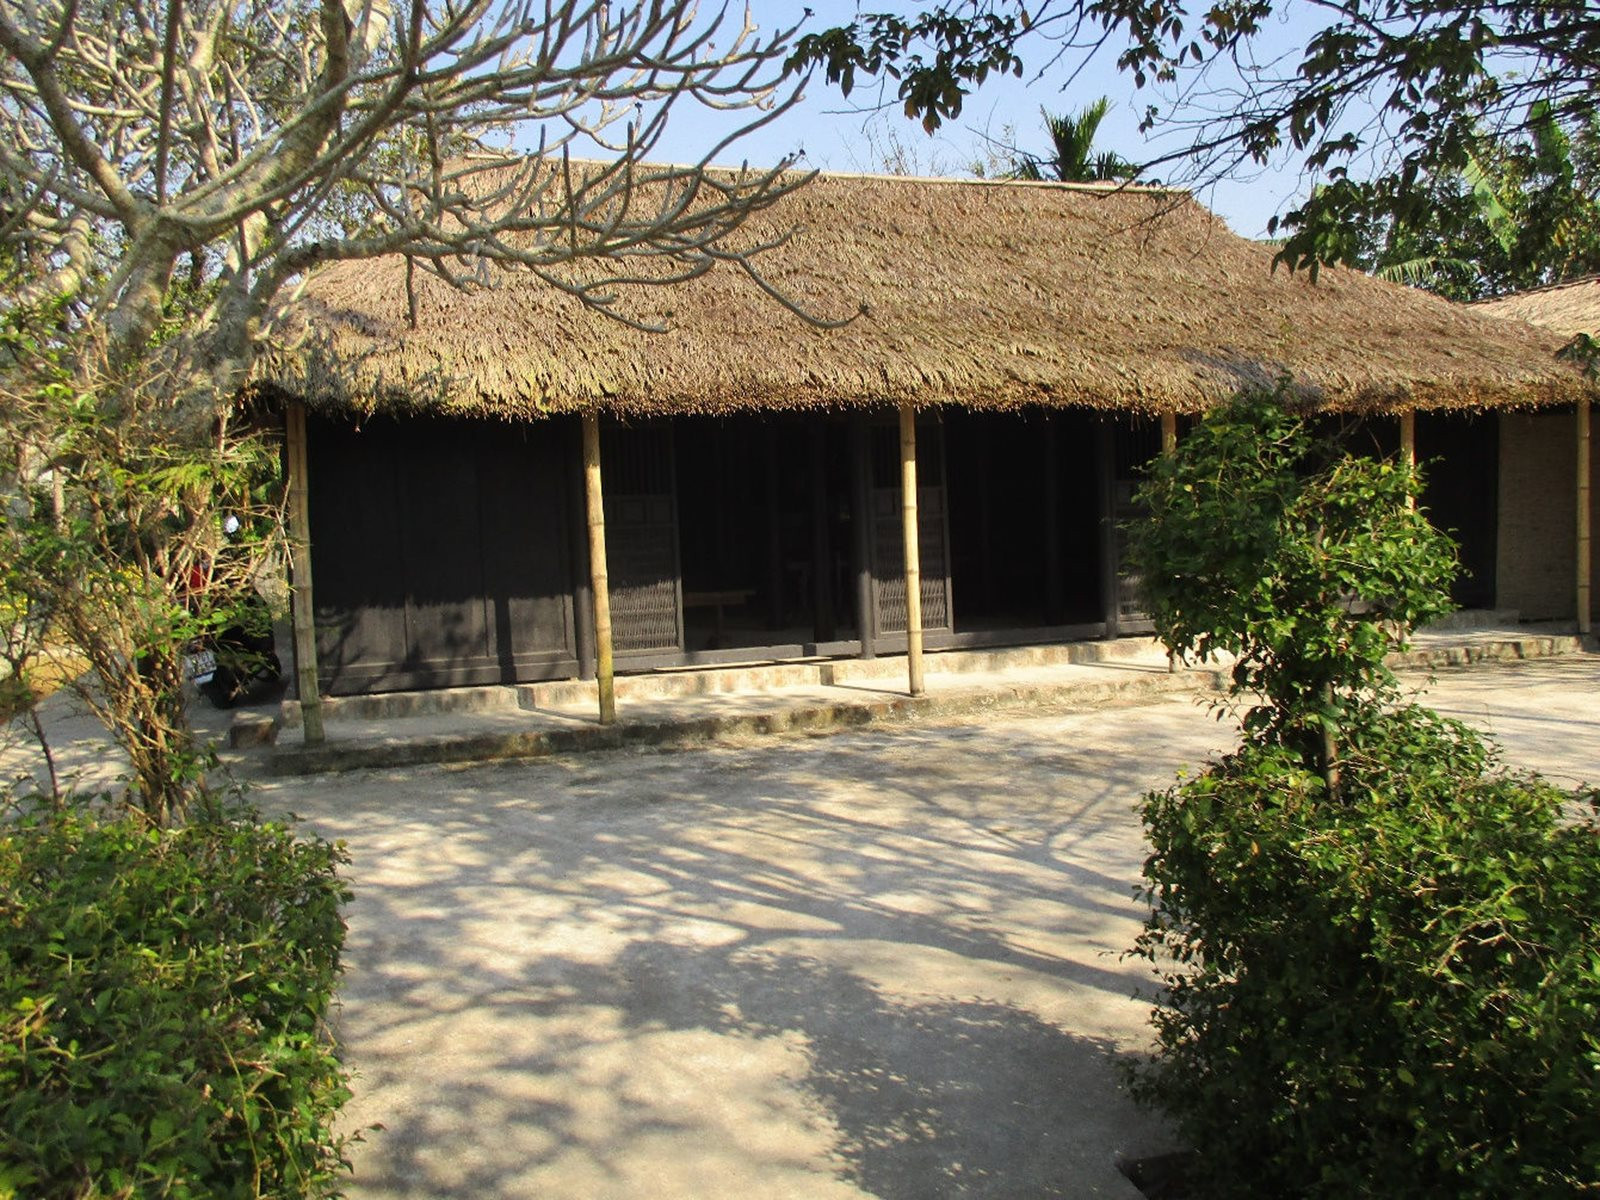 Cụ Nguyễn Sinh Sắc nhận lời về dạy học tại làng Dương Nỗ từ năm 1898 - 1900. Hiện tại, ngôi nhà đã trở thành di tích quan trọng trong Khu Di tích lưu niệm về Bác Hồ tại xã Dương Nỗ. Ảnh: Tư liệu